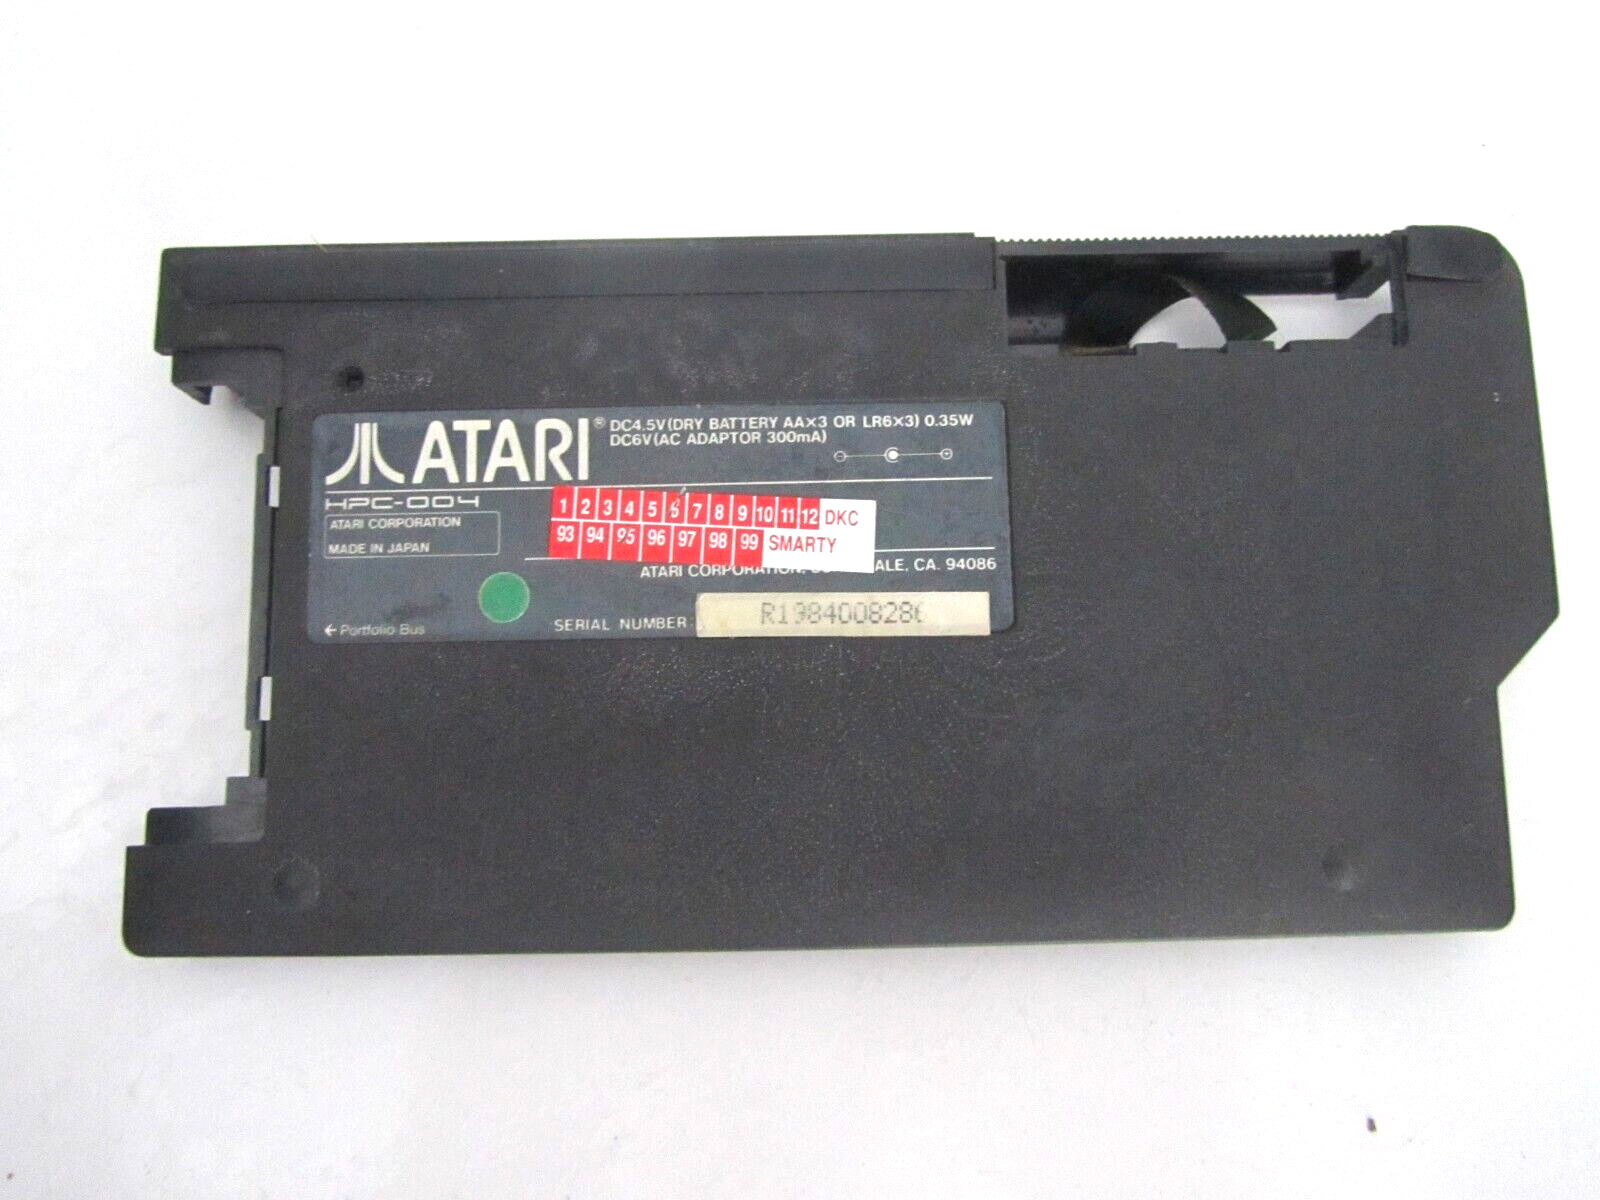 OEM ATARI Portfolio HPC-004 Computer Back Case Cover ASSY Rep Part